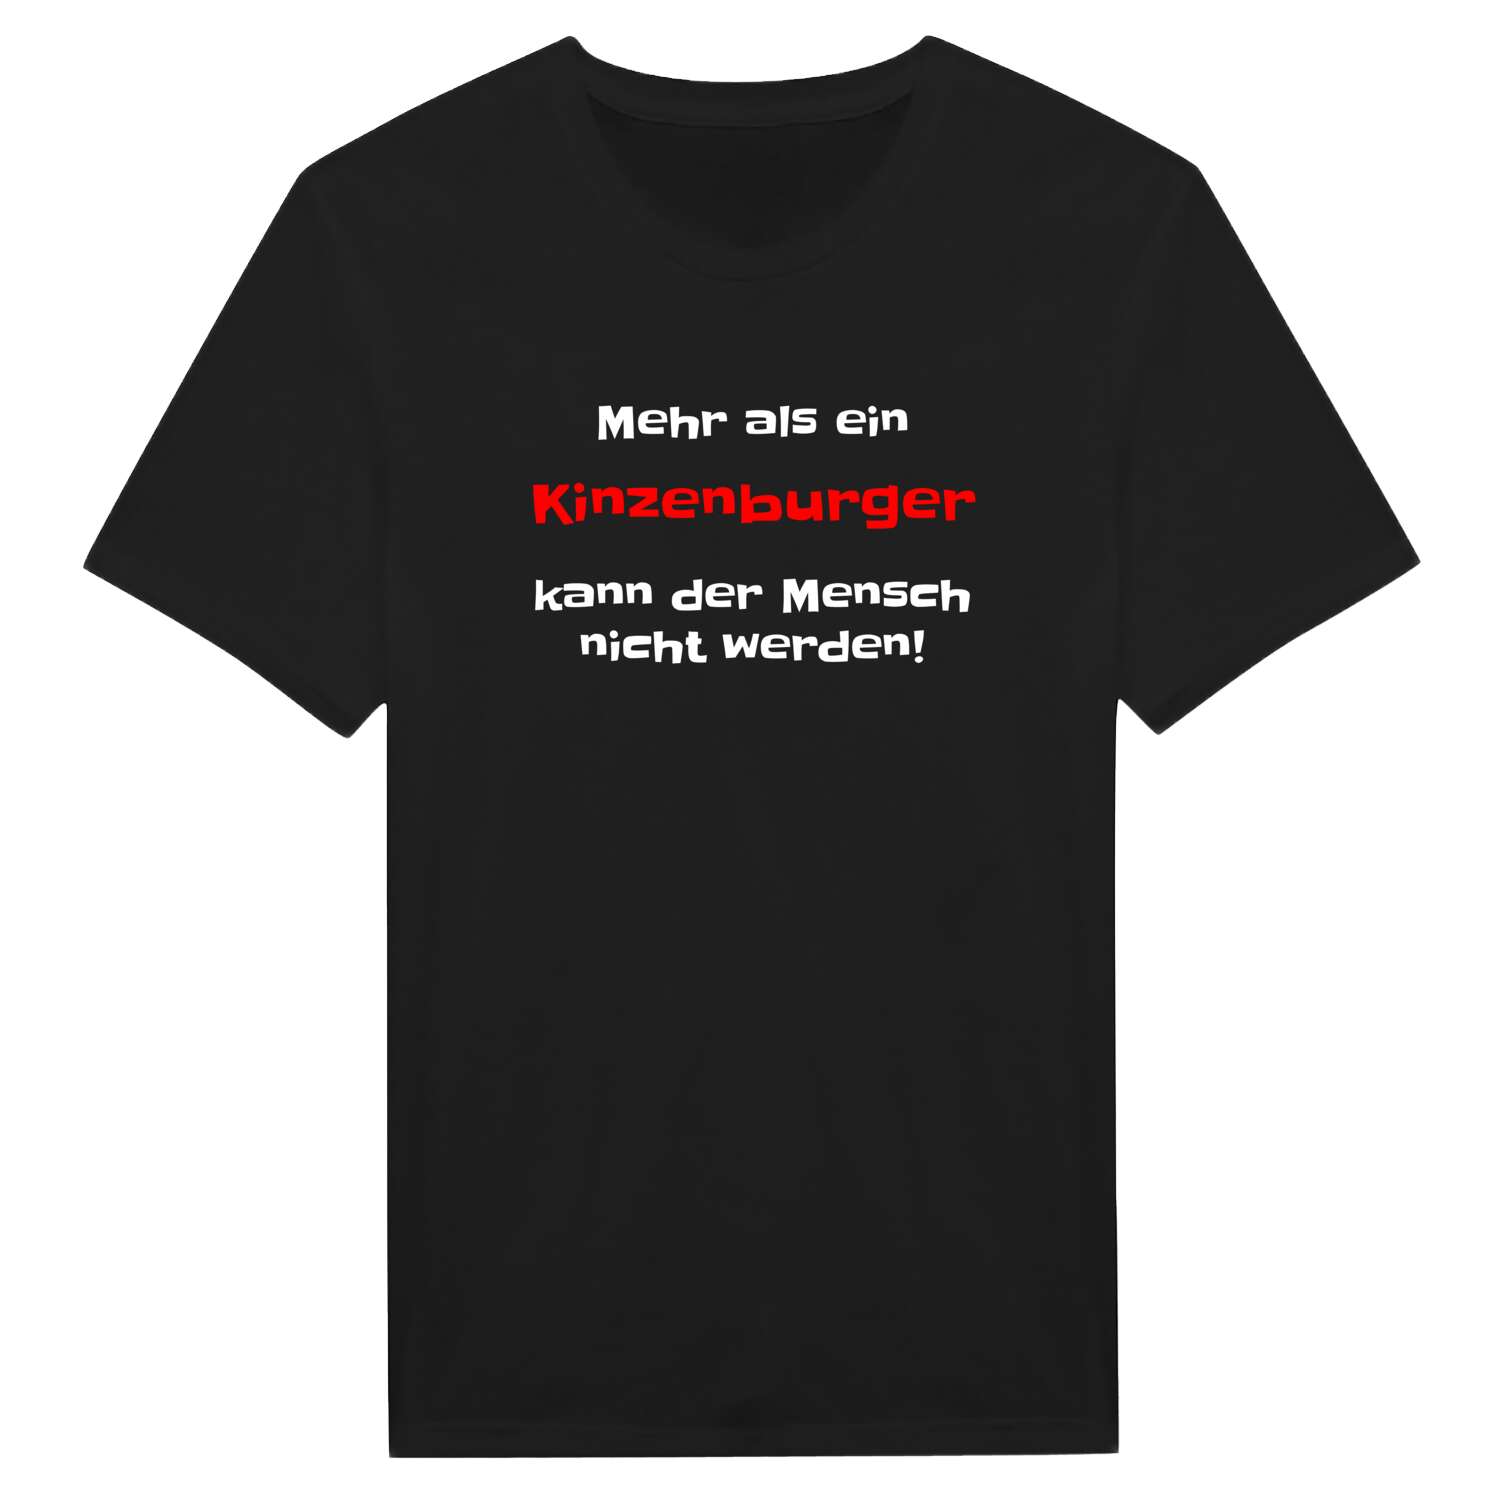 Kinzenburg T-Shirt »Mehr als ein«